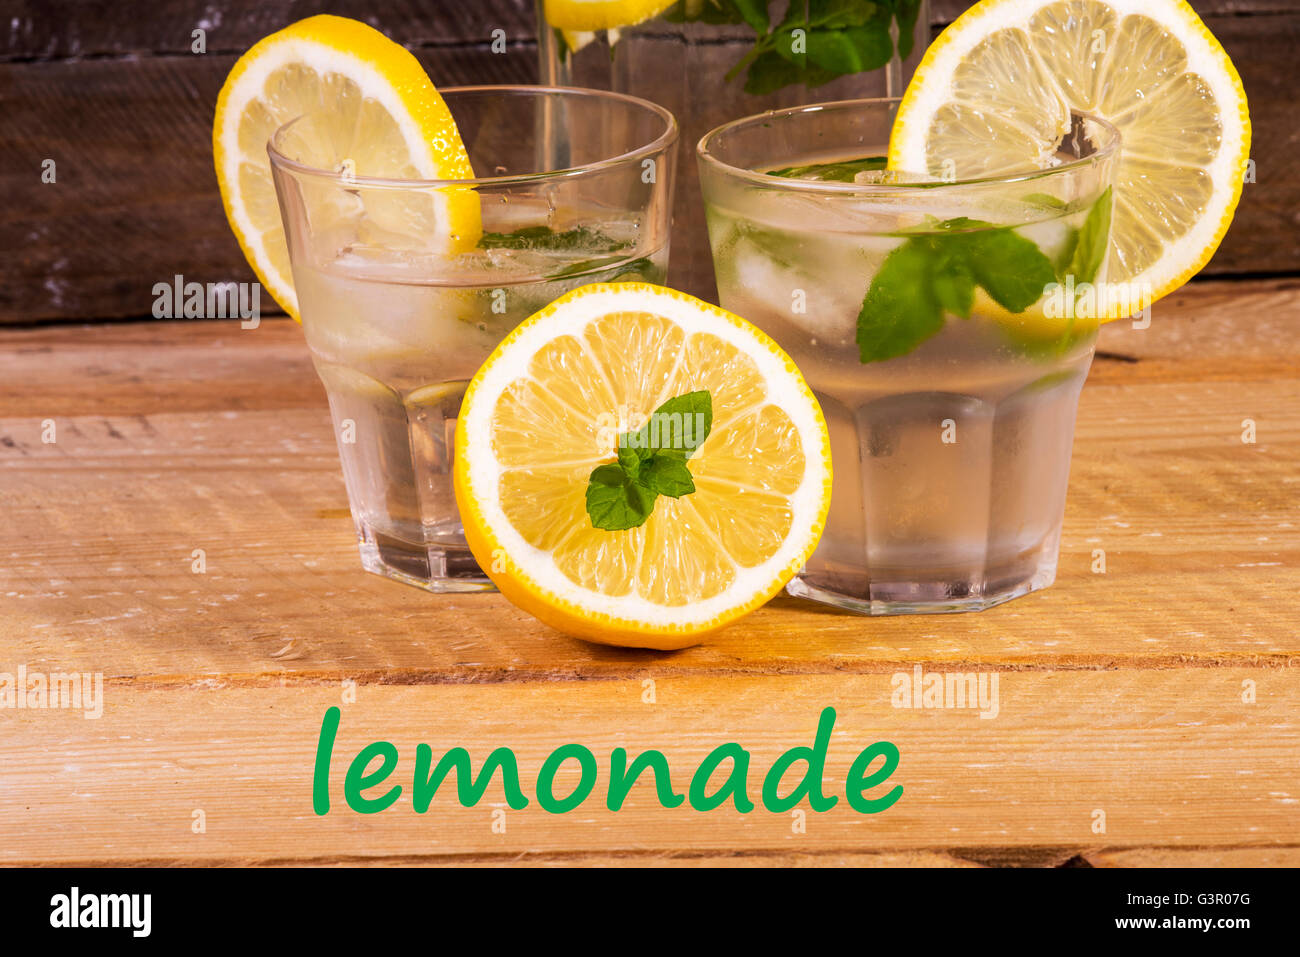 Fotografia che mostra la classica limonata con menta fresca Foto Stock